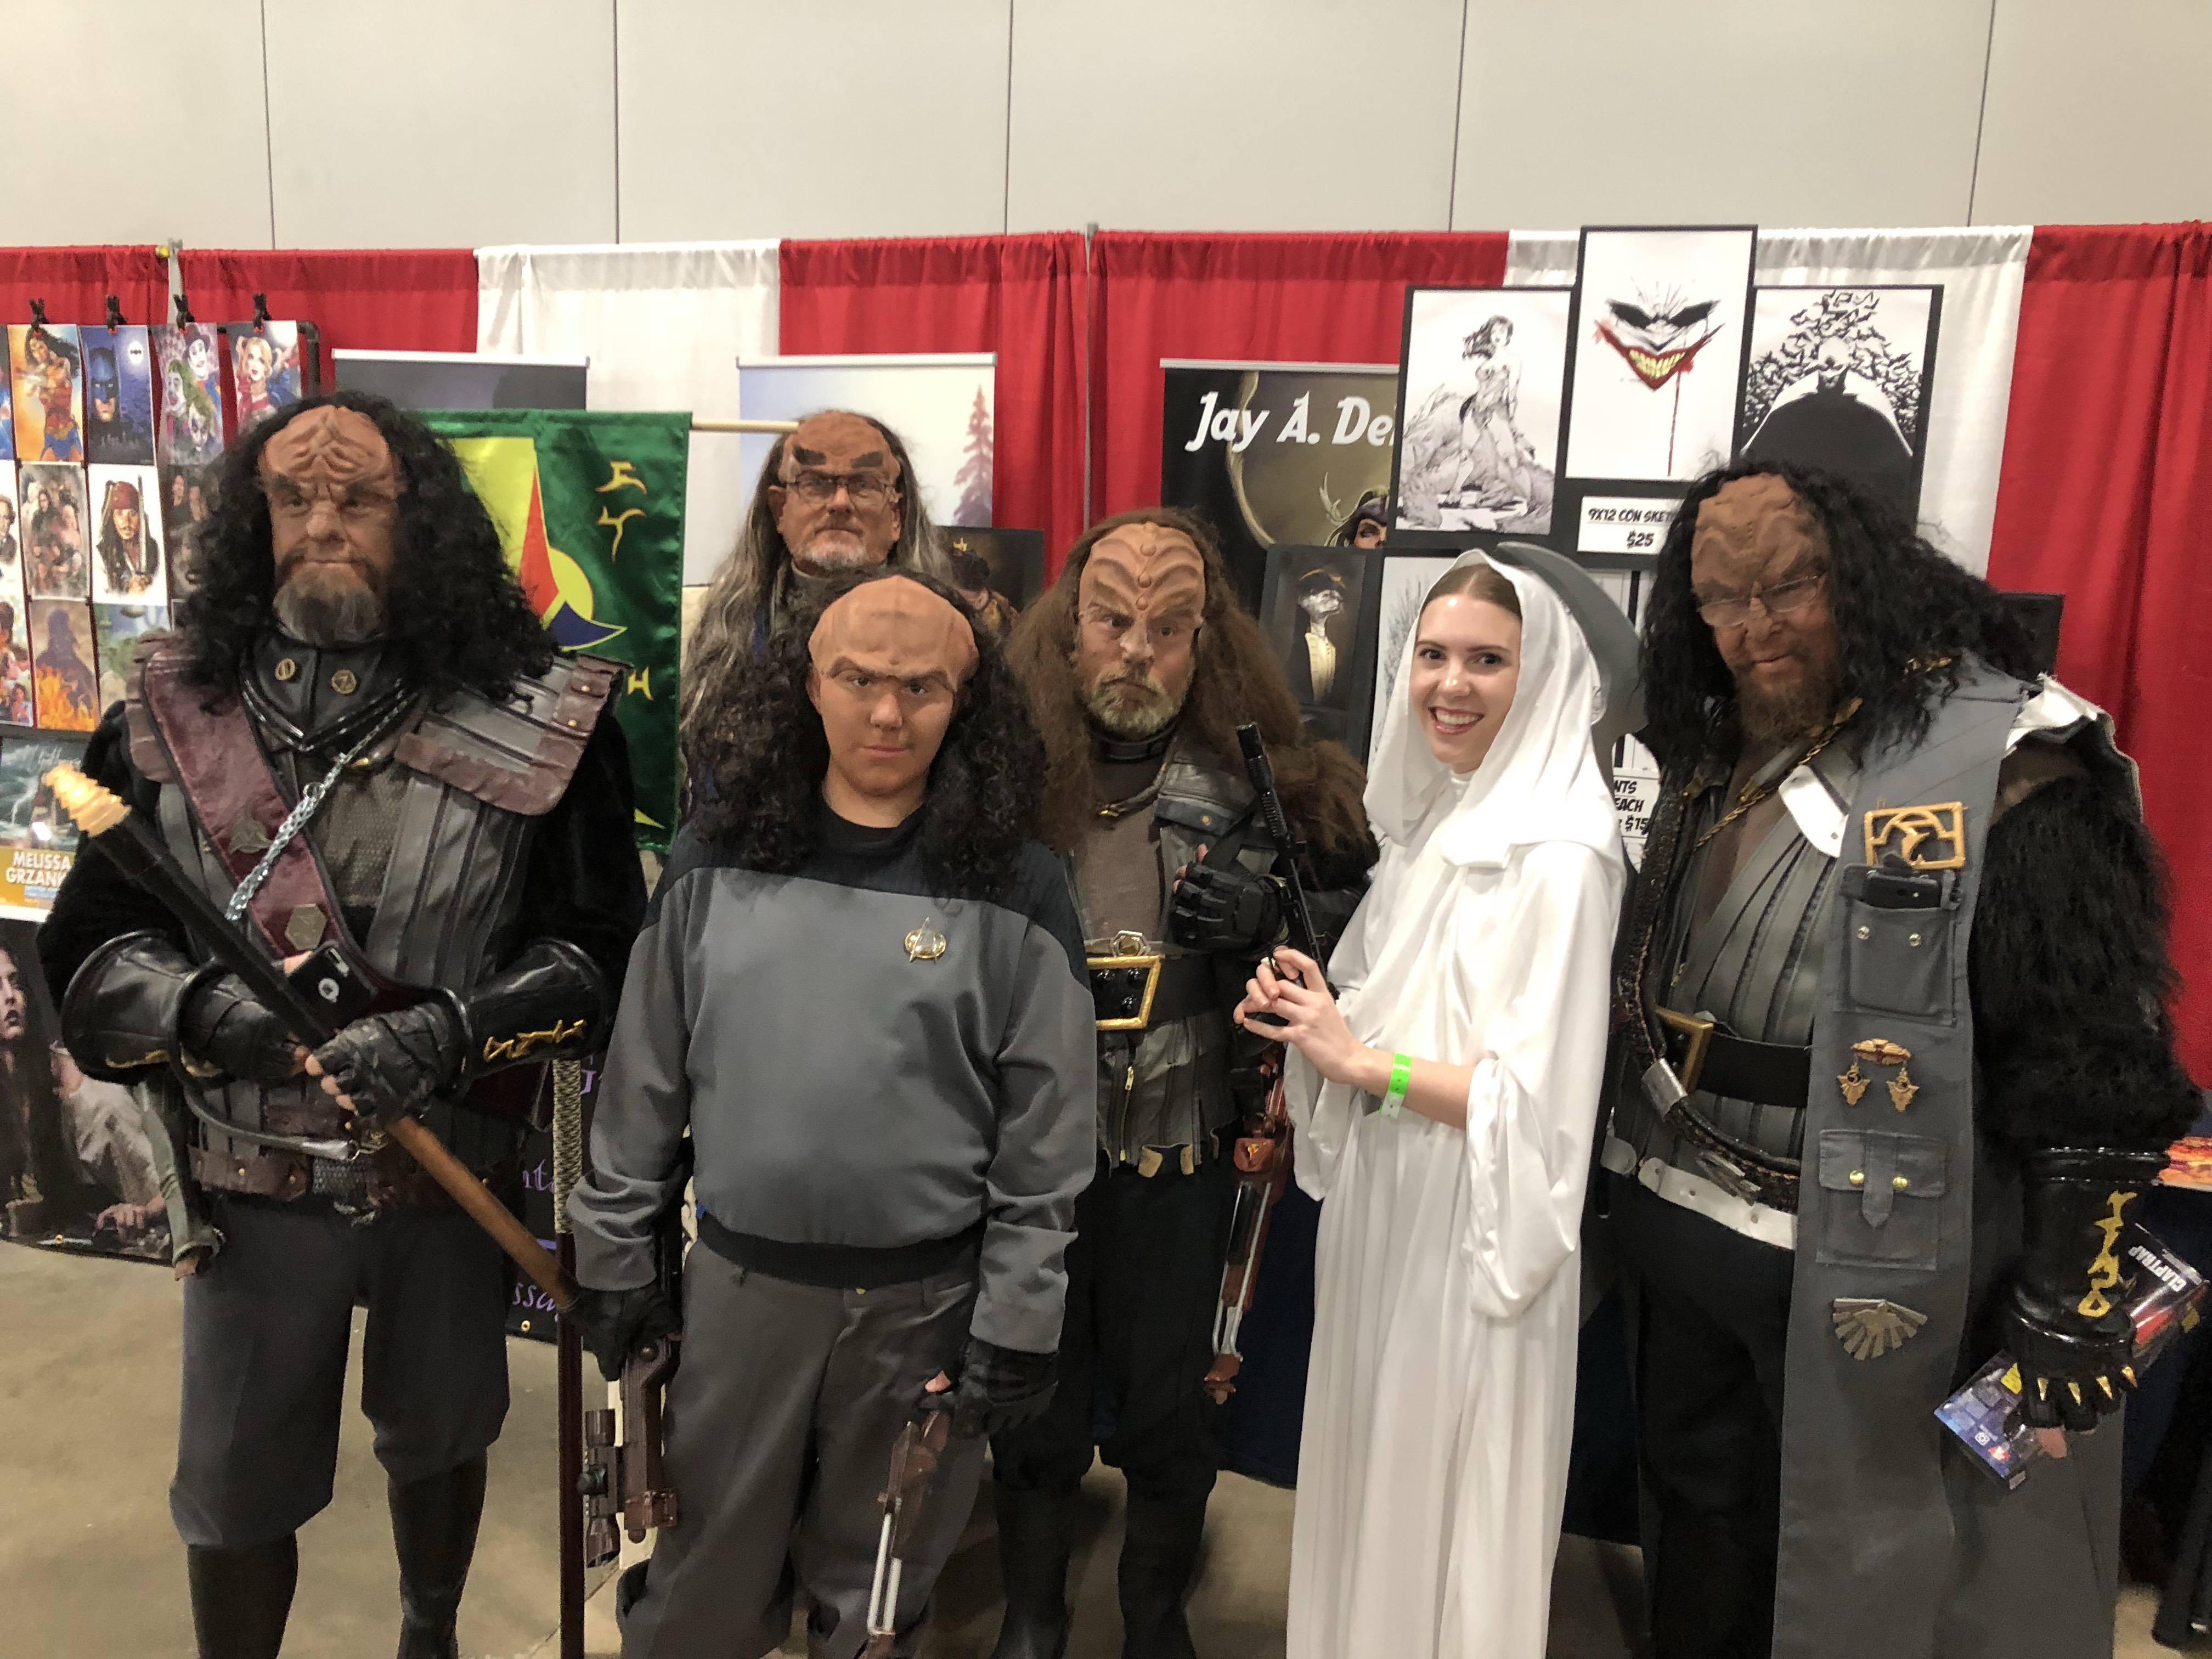 cosplay klingon